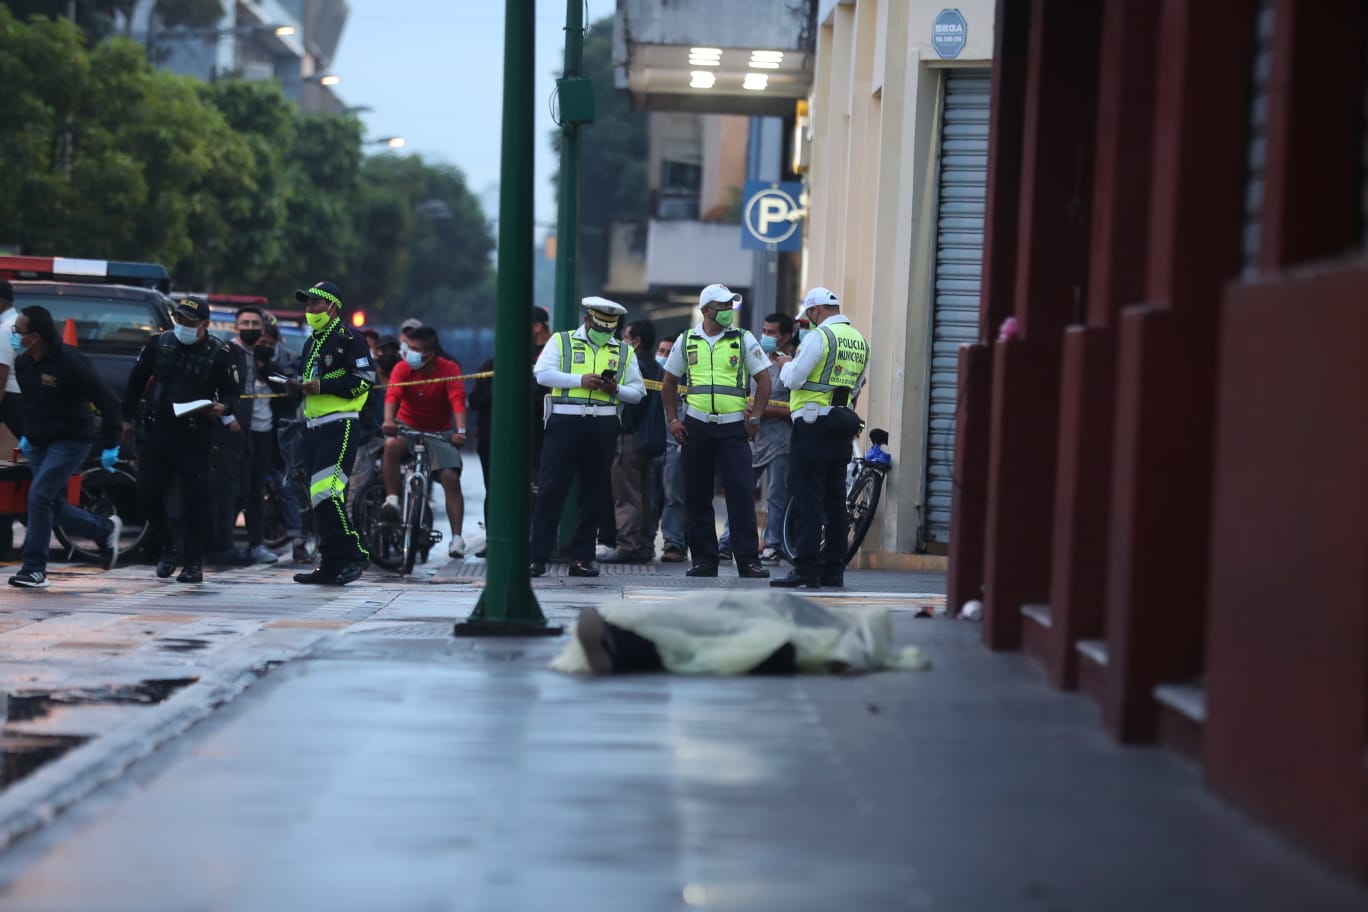 La balacera causó pánico en los visitantes del Paseo de la Sexta. (Foto Prensa Libre: Juan Diego González)